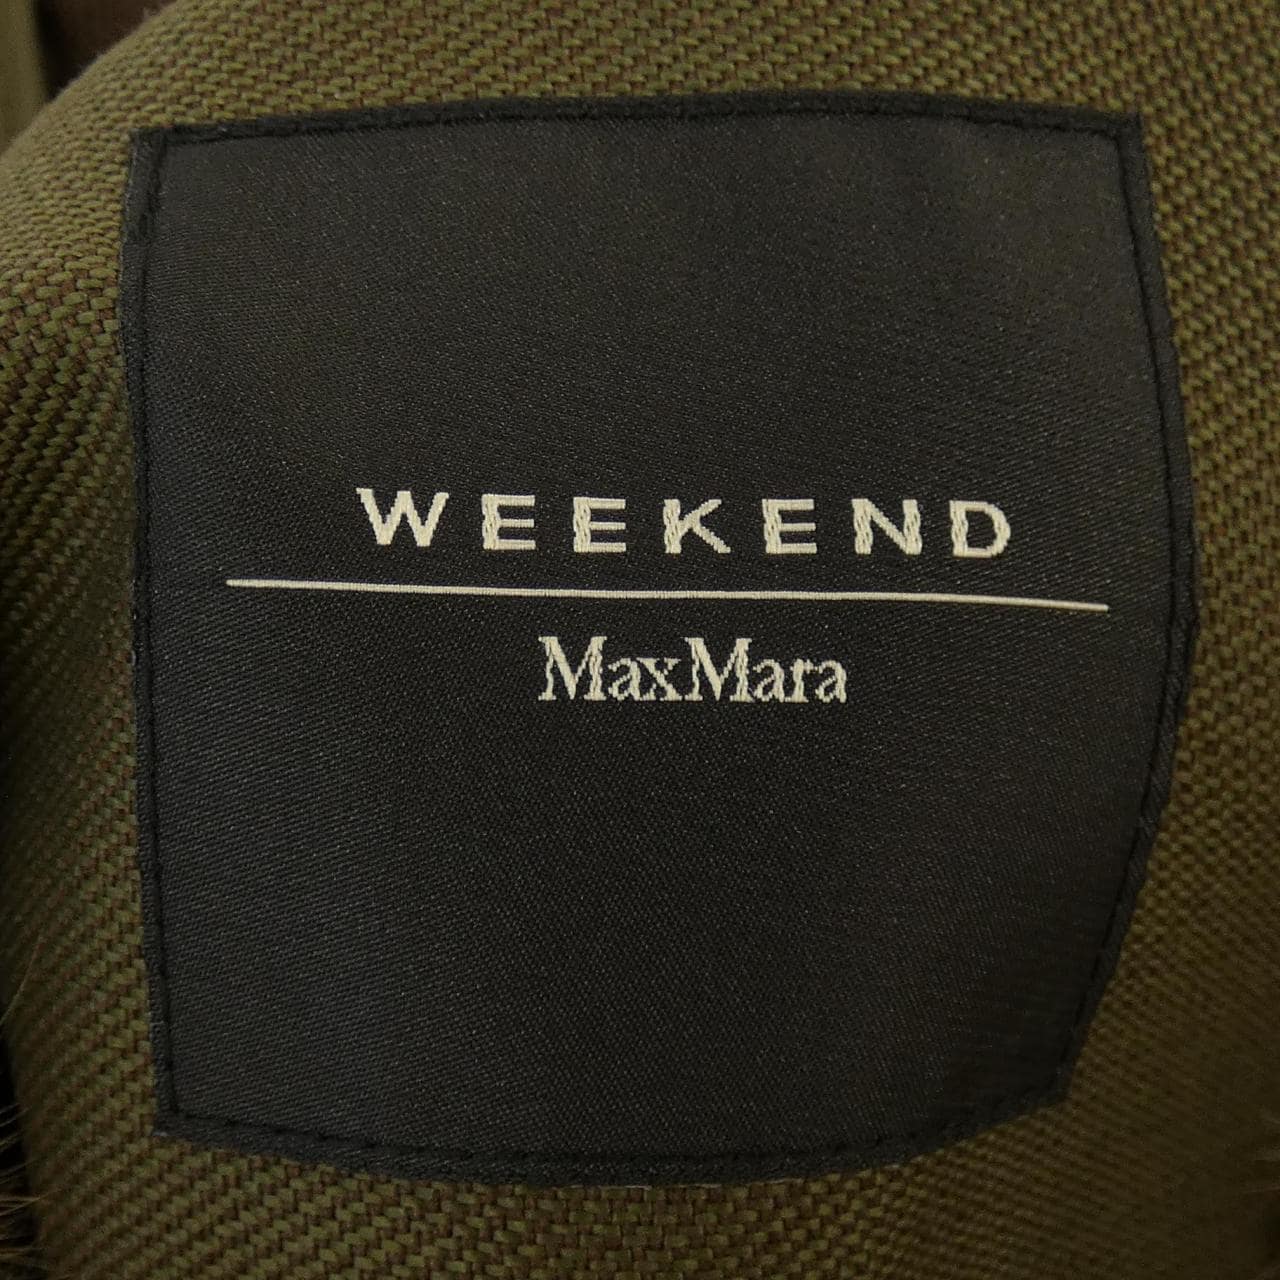 マックスマーラウィークエンド Max Mara weekend コート